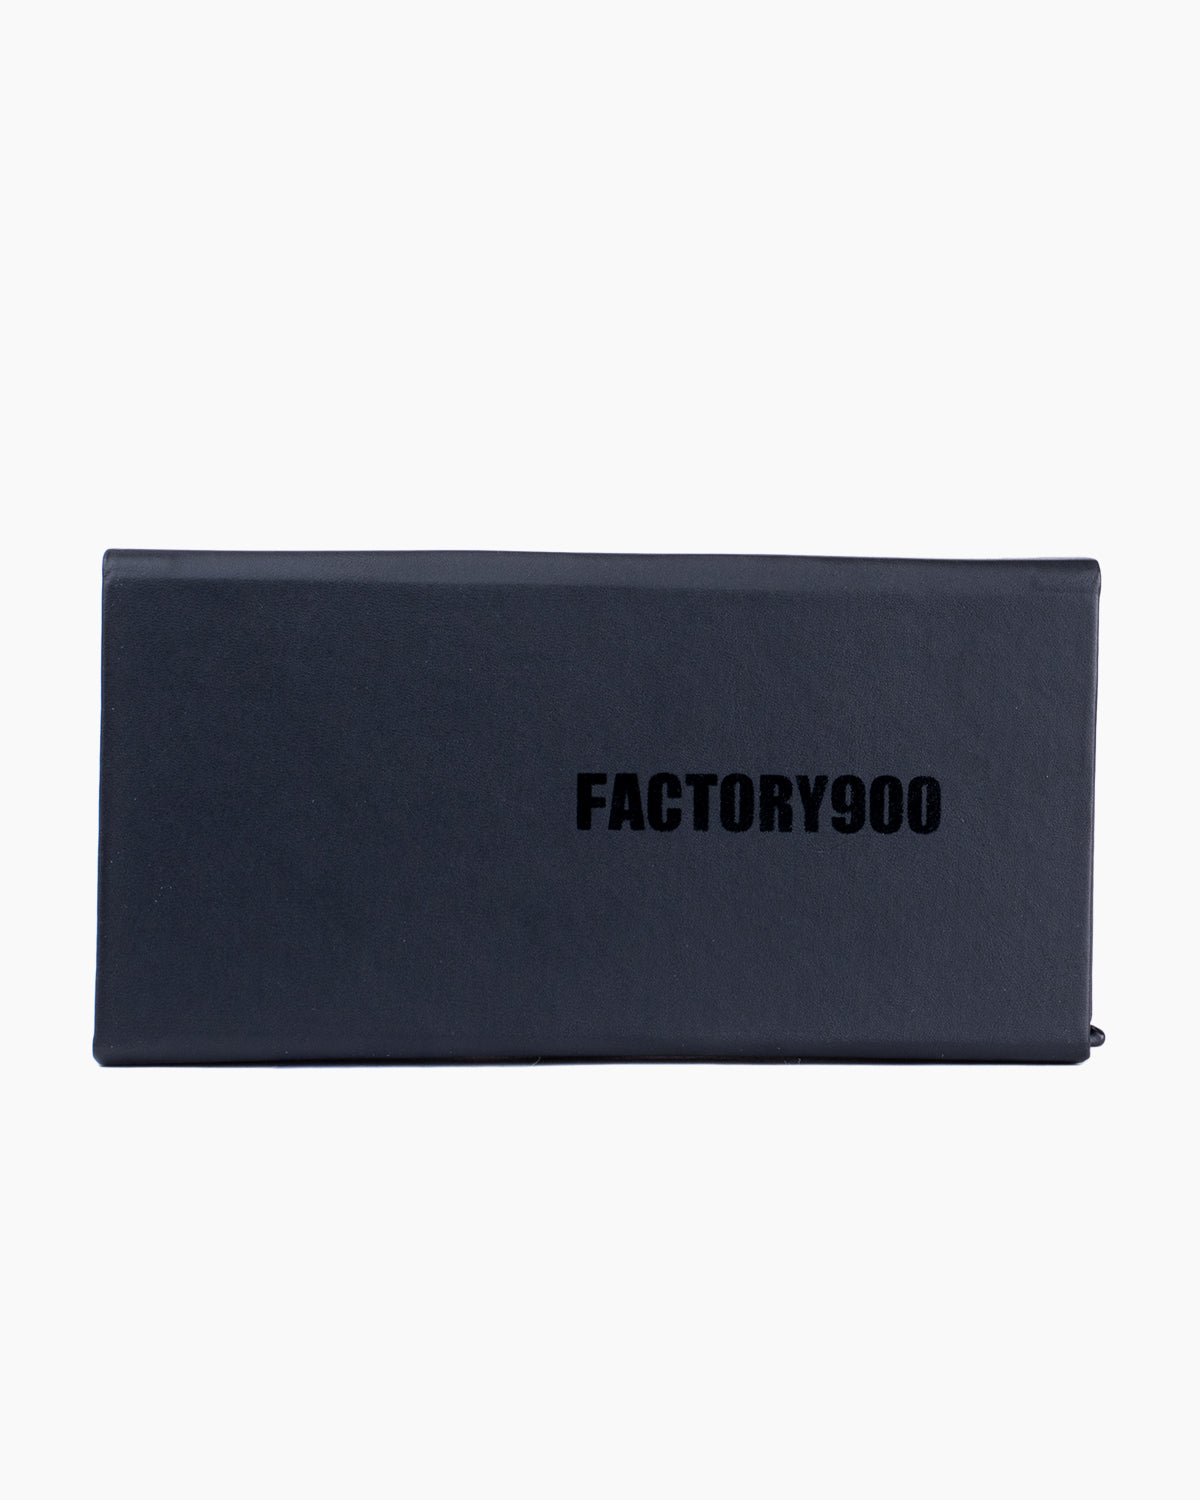 Factory 900 - Yu - 721 | Bar à lunettes:  Marie-Sophie Dion